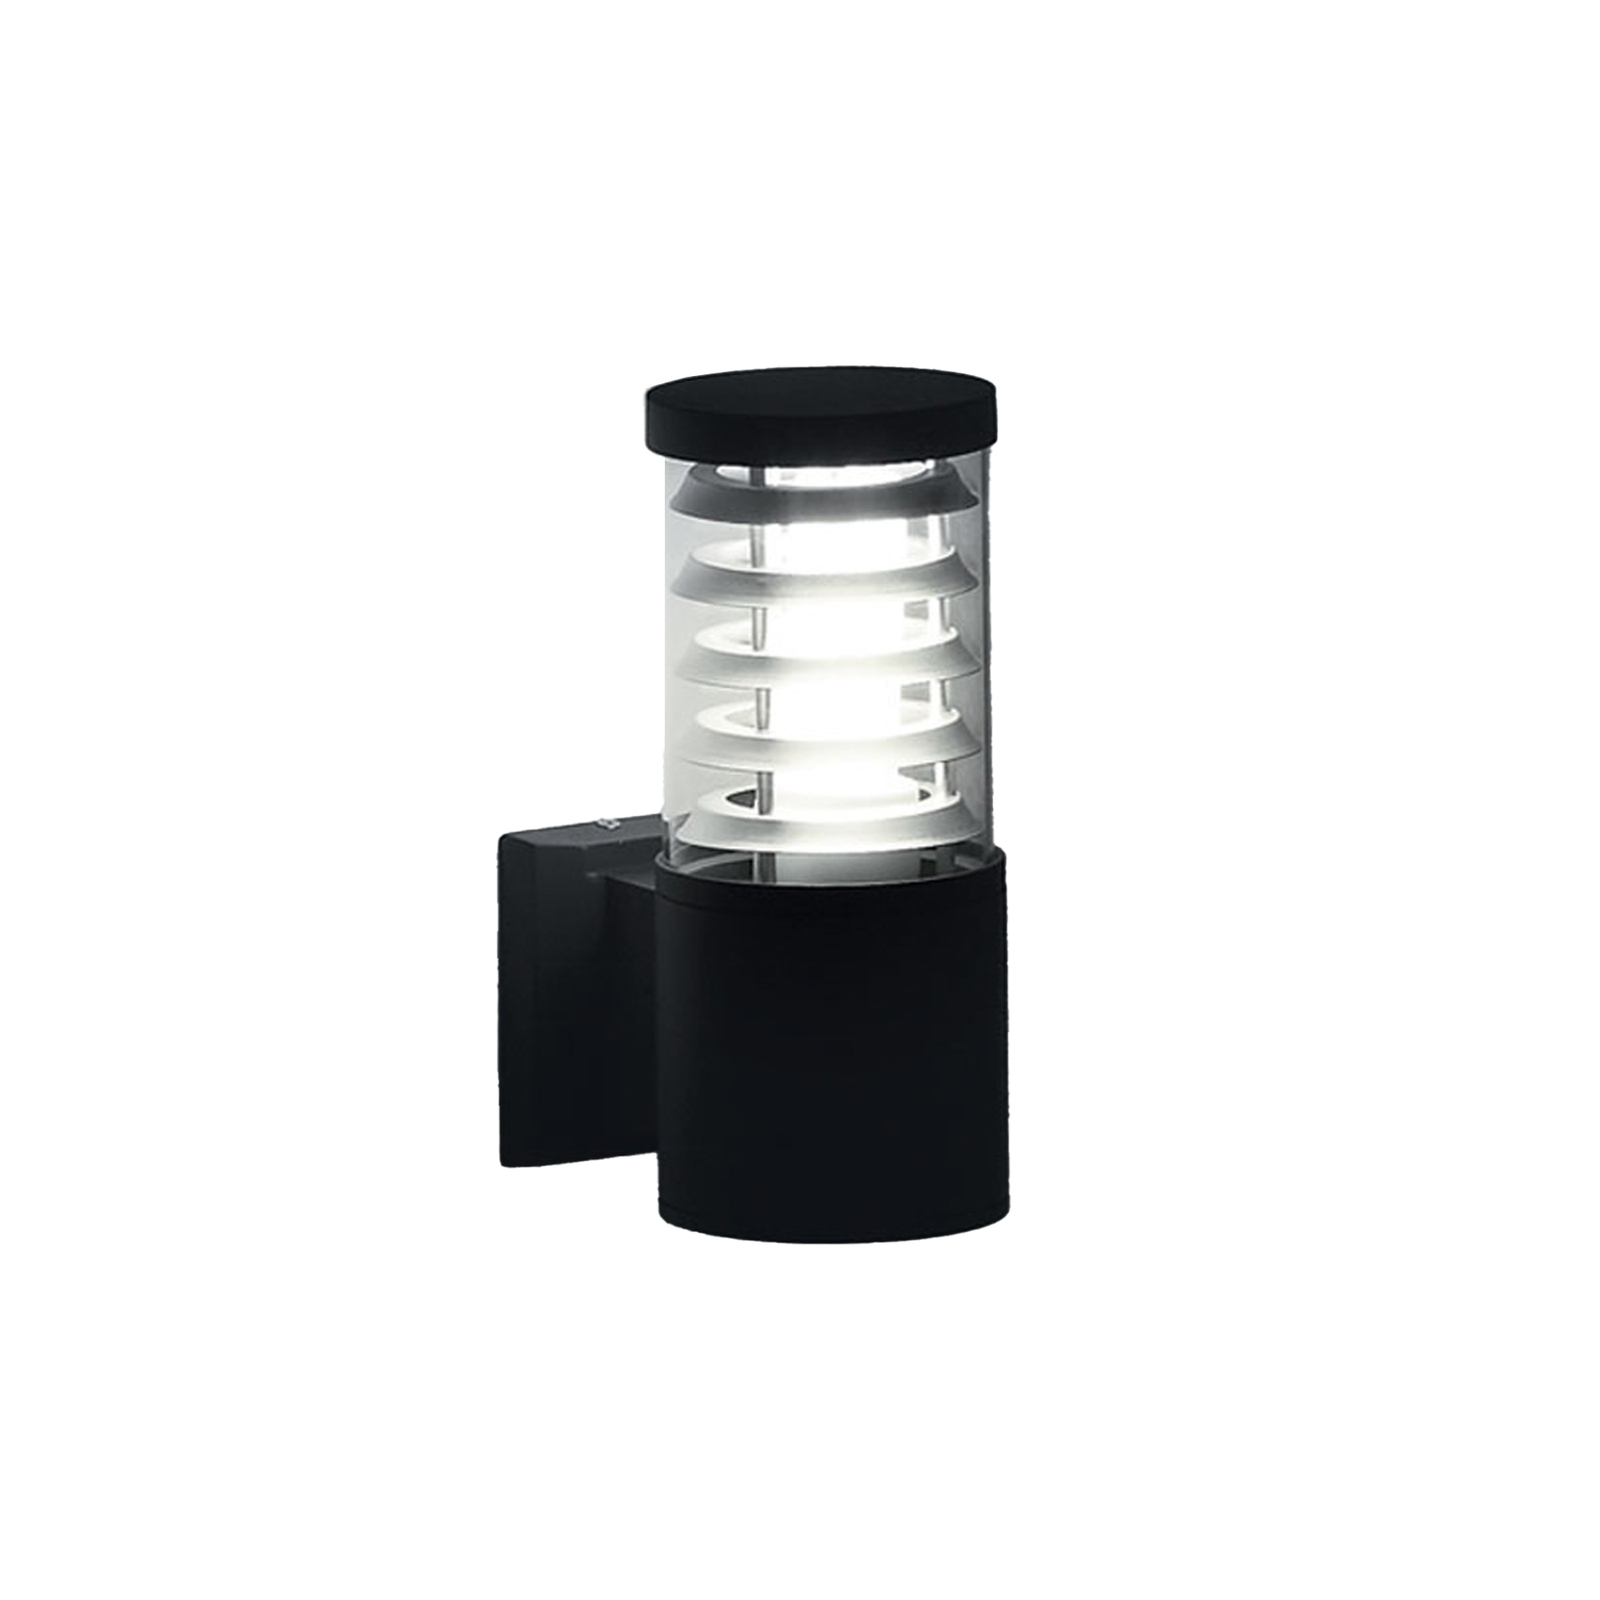 Vonkajšie nástenné svietidlo Ideal Lux Tronco antracit, hliník, výška 25 cm